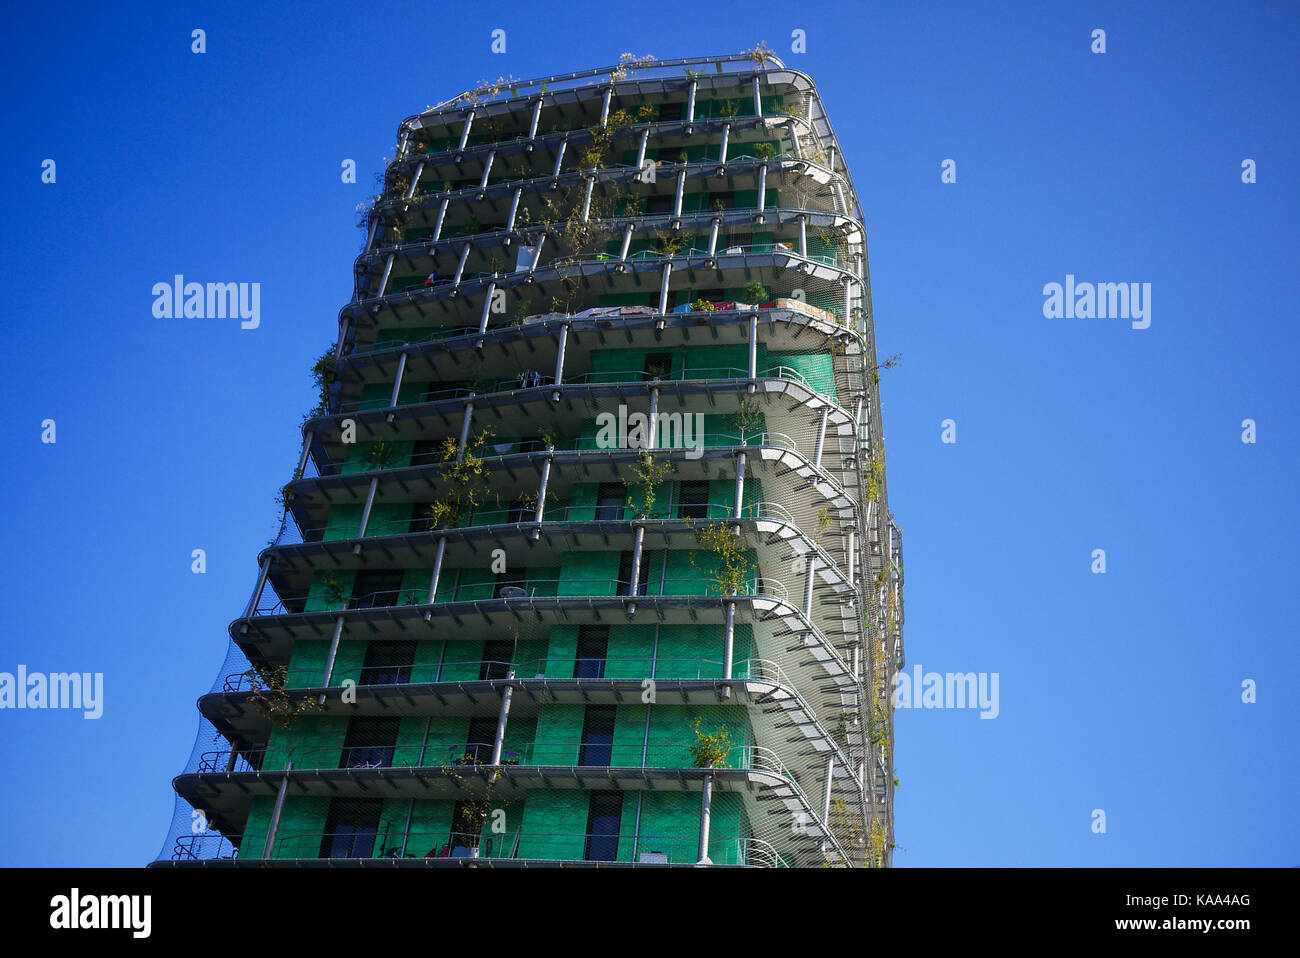 Die M6 B2 Turm, genannt auch der Turm der Biodiversität. Paris, FrancT Stockfoto